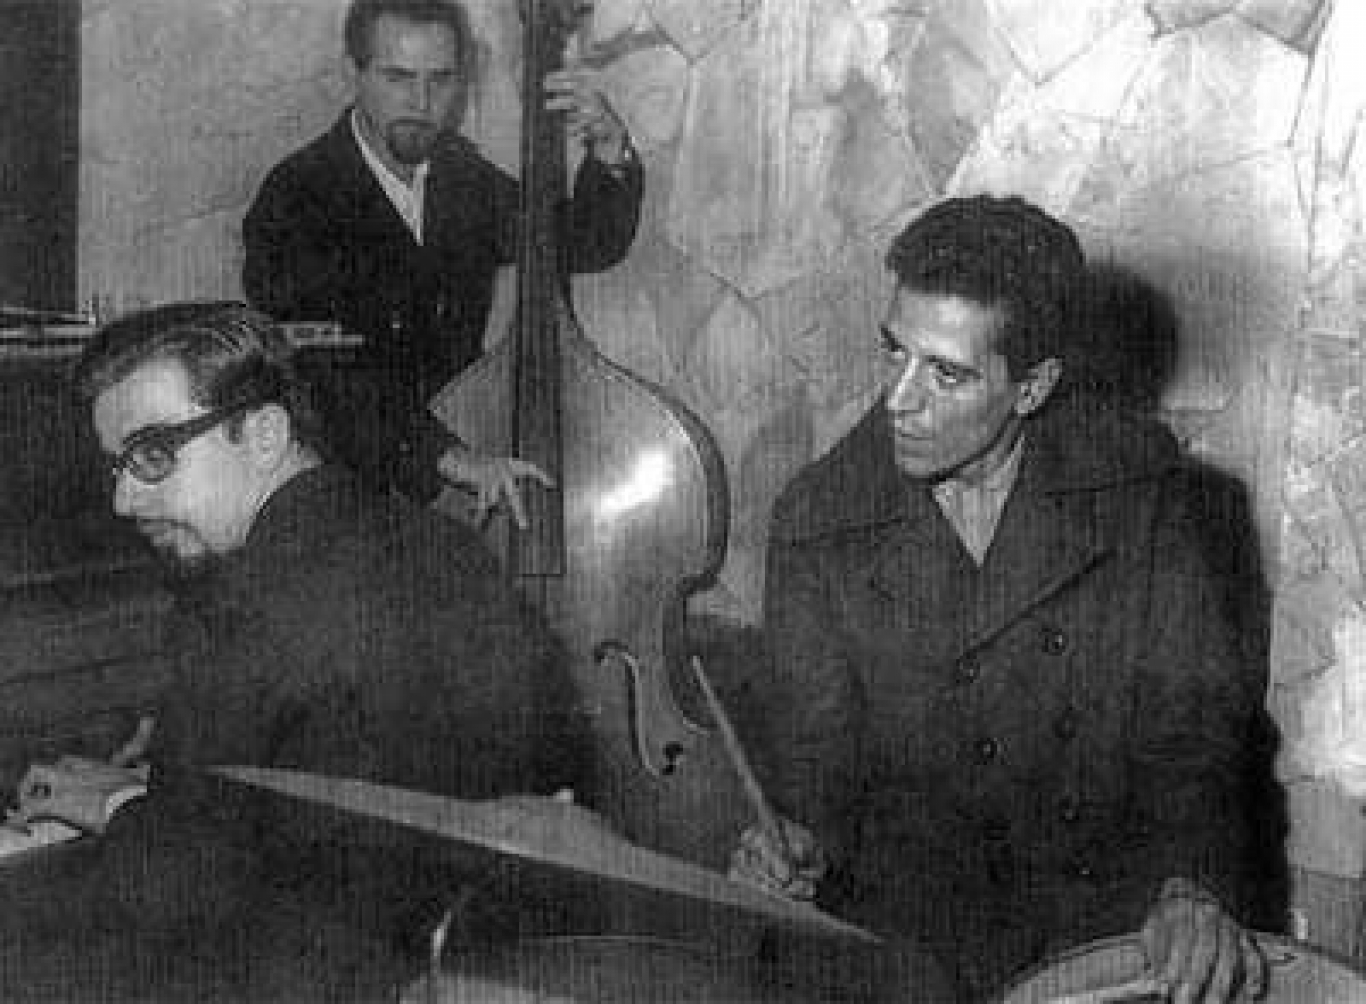 La historia de Tenório Jr., el pianista de Vinicius de Moraes detenido-desaparecido en 1976